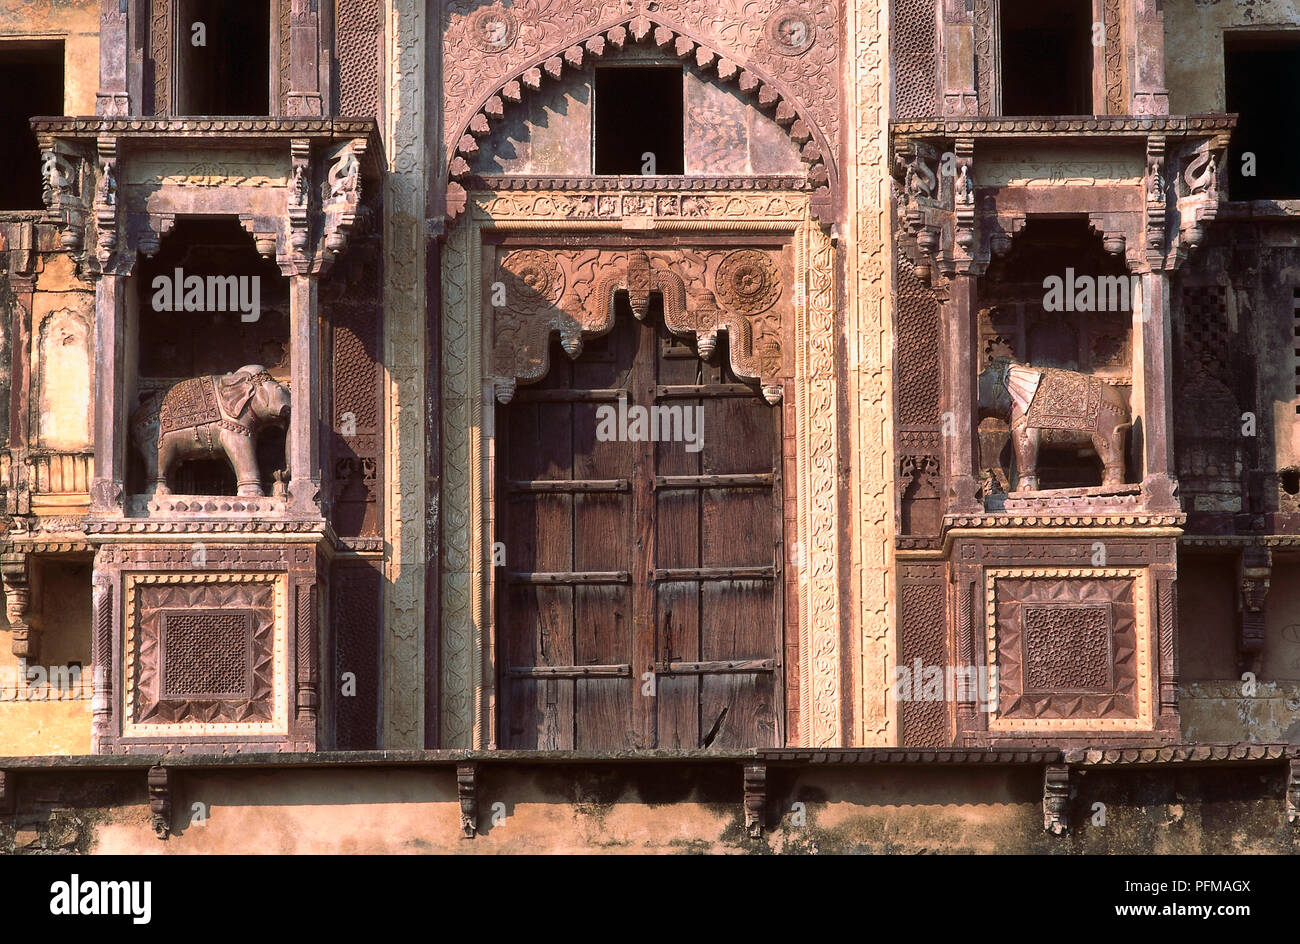 India, Jahangiri Mahal, Rajput Bundela architecture, impressively fringed entrance gateway, red sandstone, flanked by stone elephants. Stock Photo